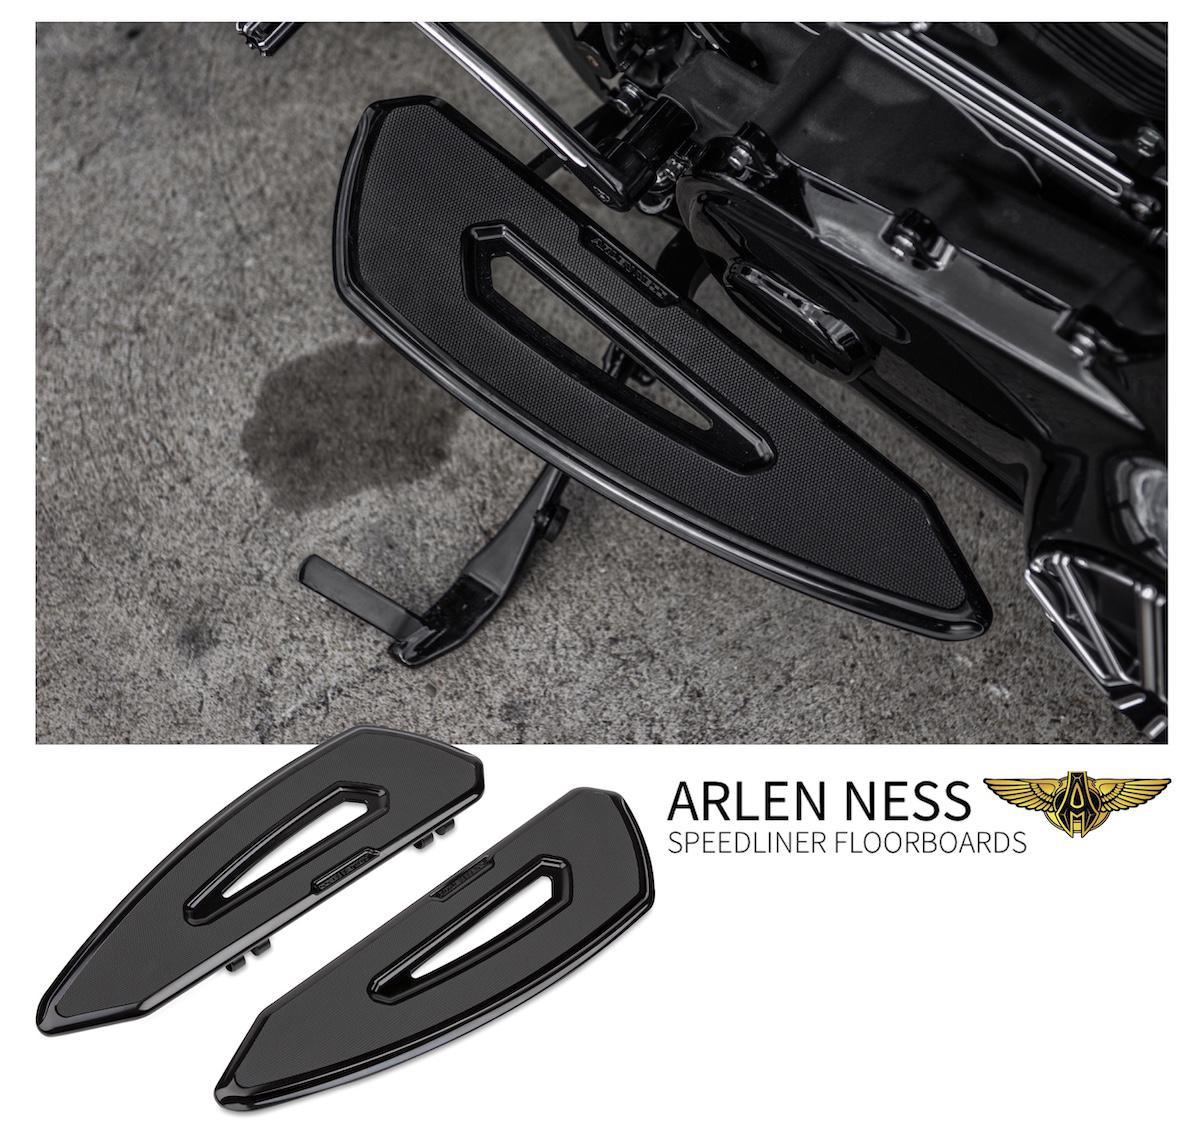 ARLEN NESS - Speedliner Floorboards